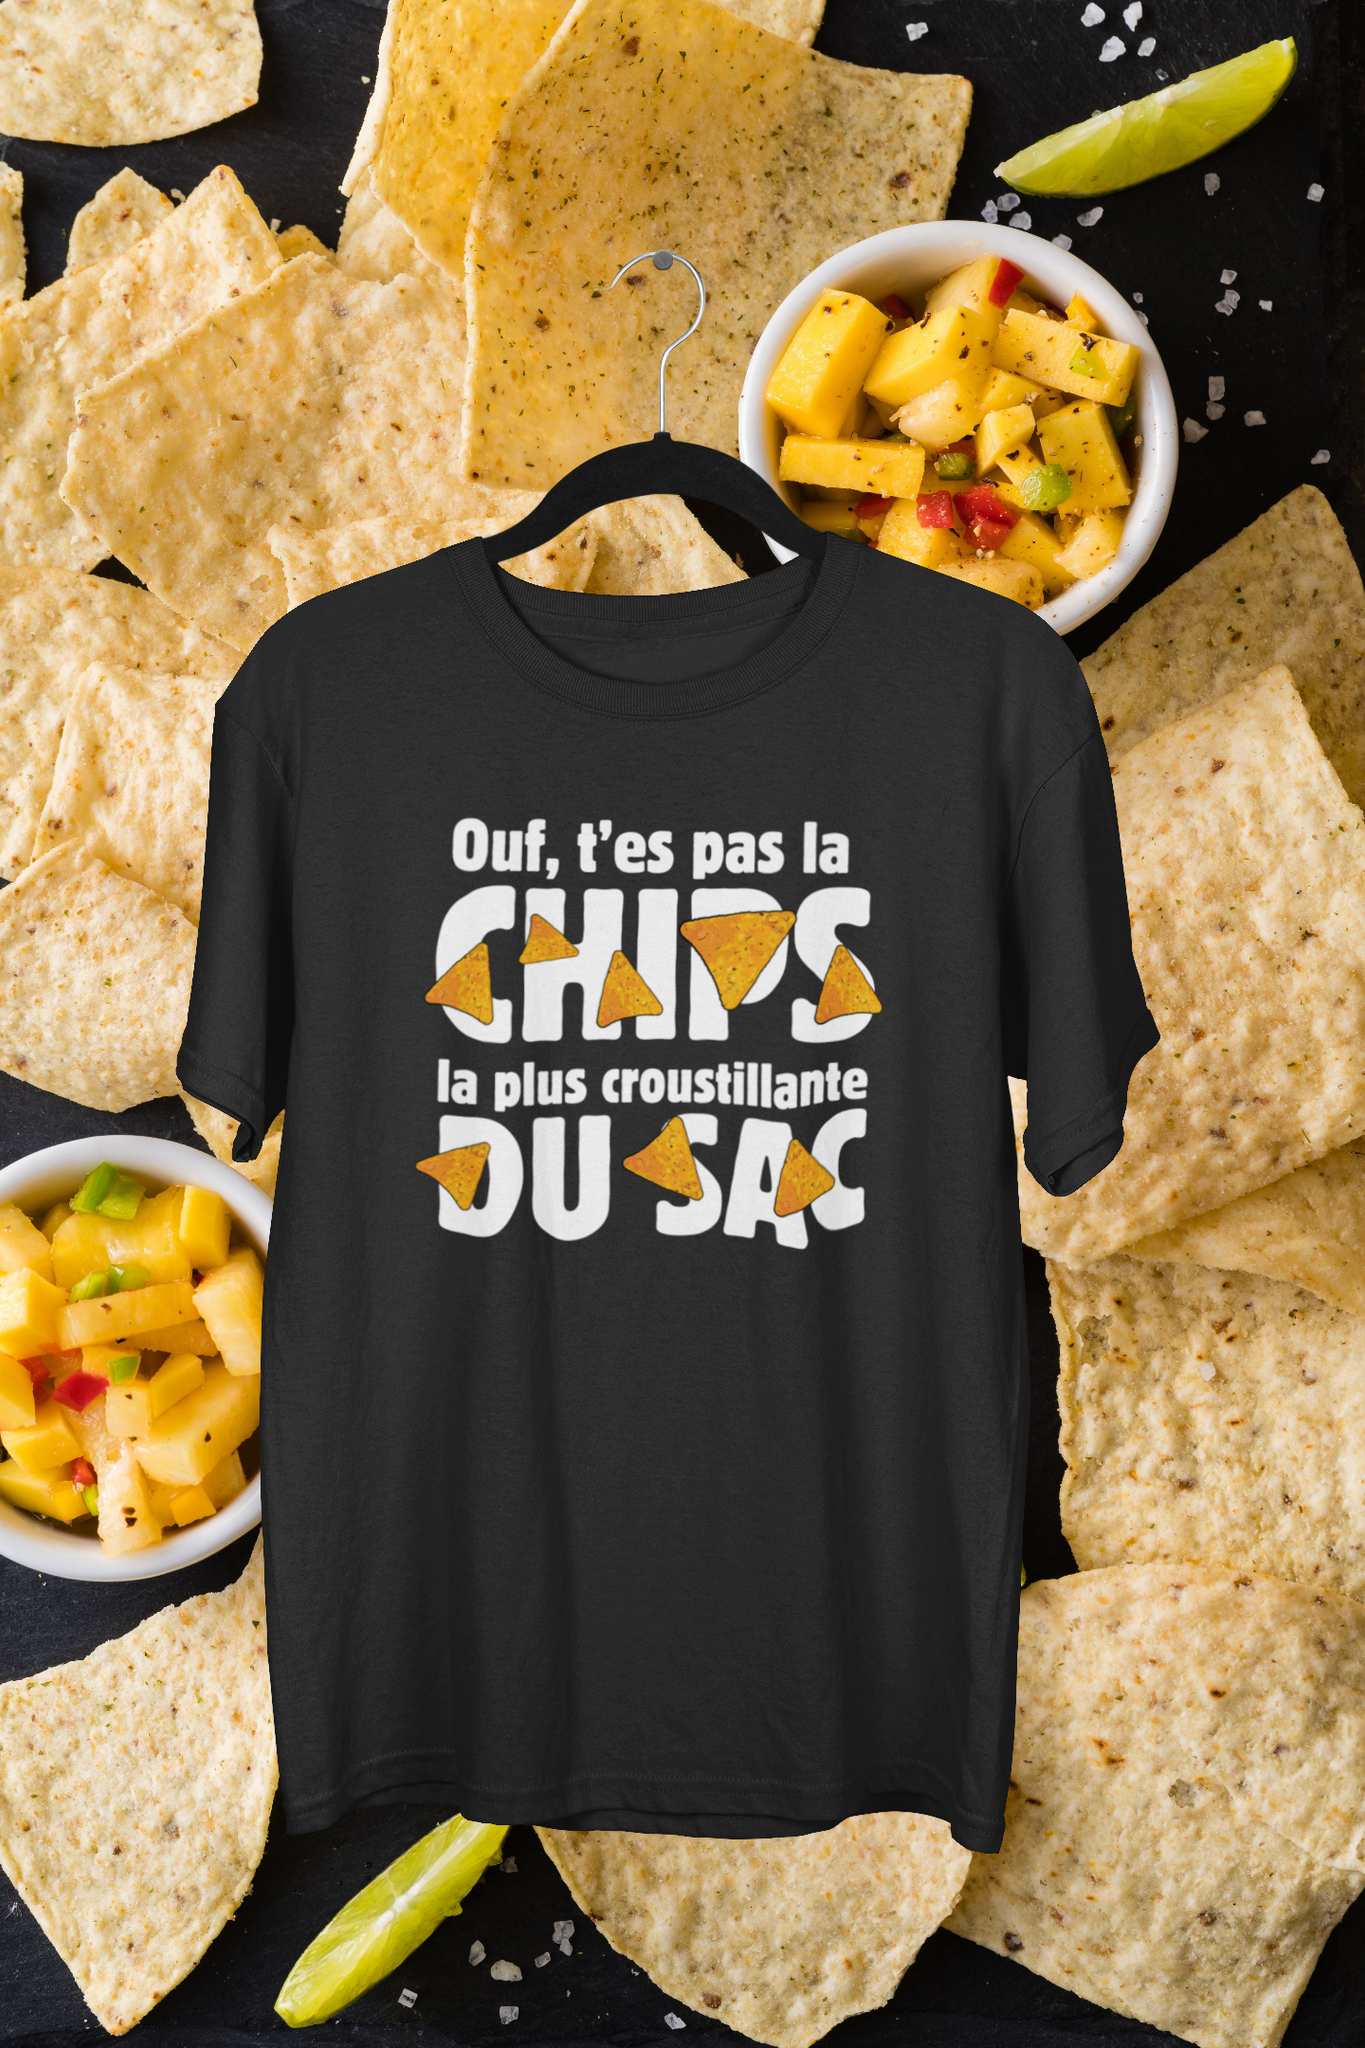 T-Shirt Ouf, t'es pas la chips la plus croustillante du sac